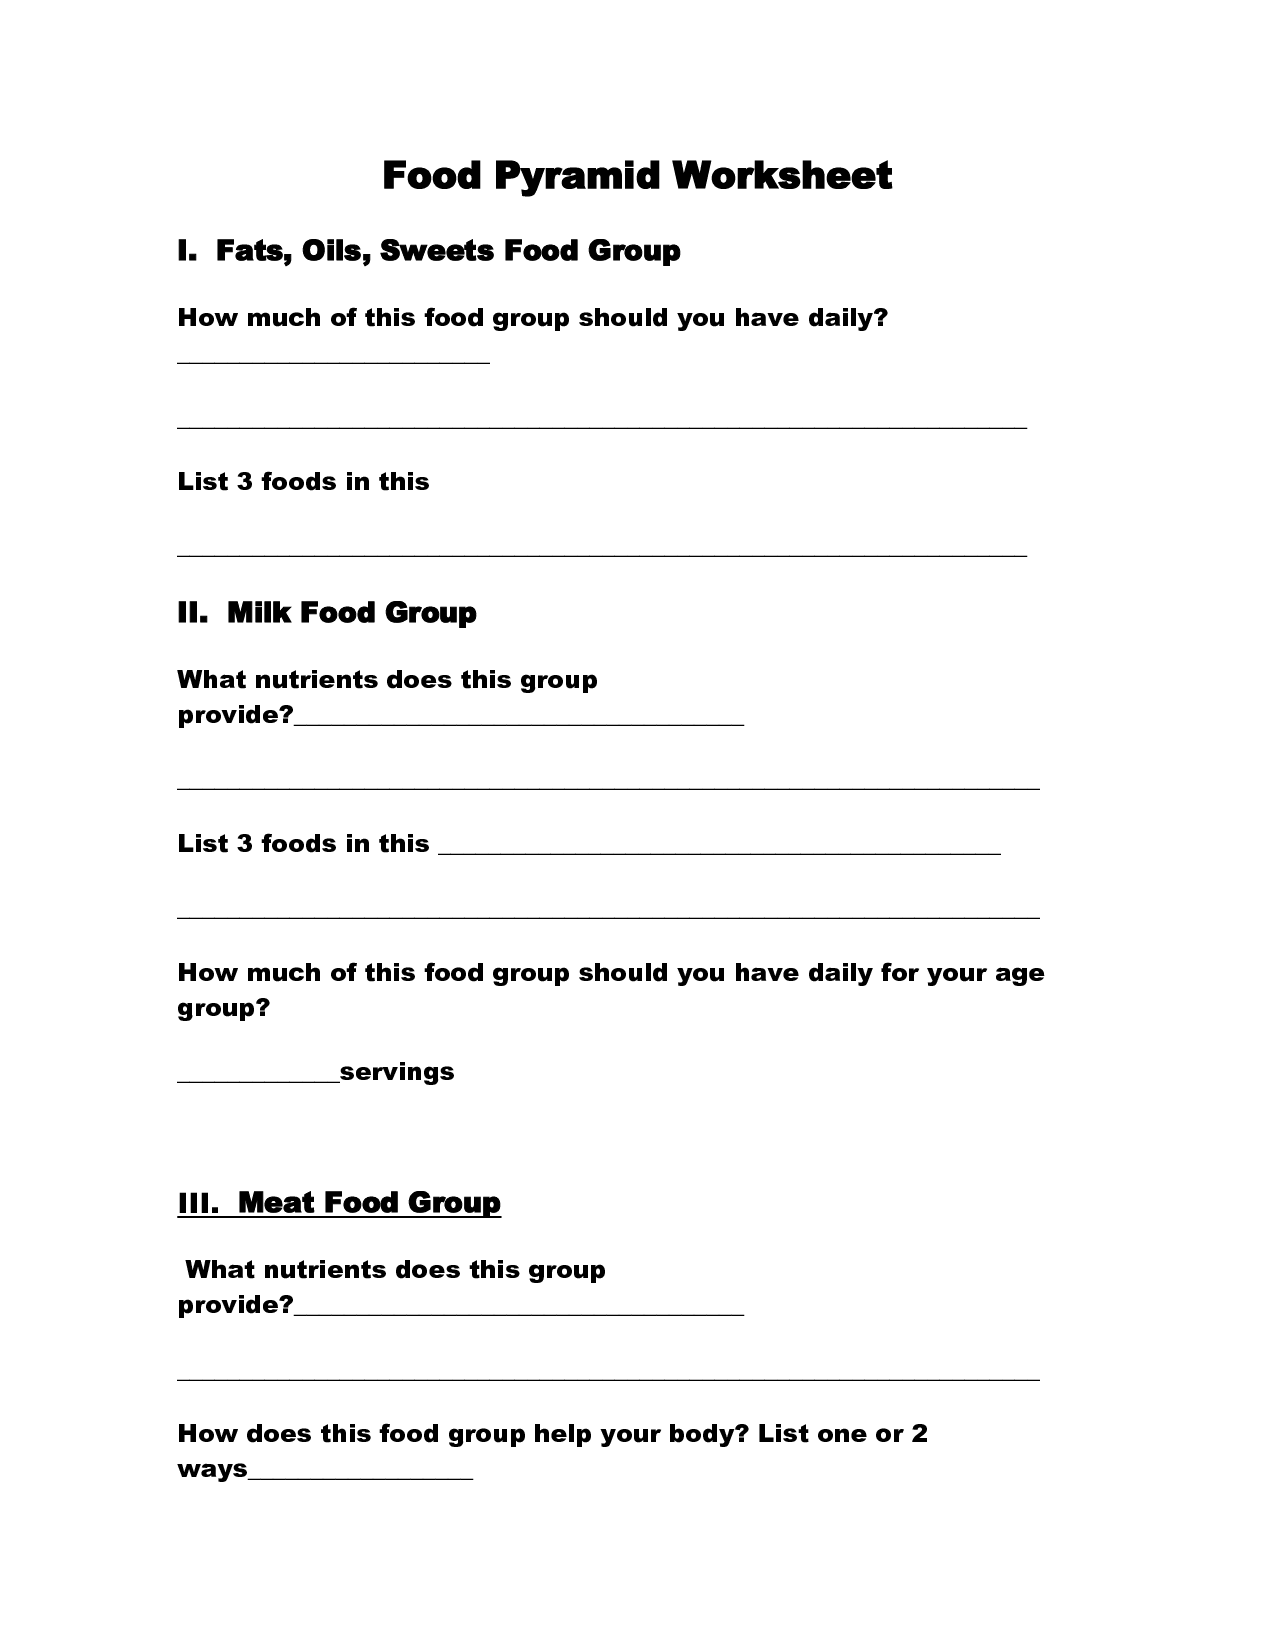 Food Groups Pyramid Worksheets